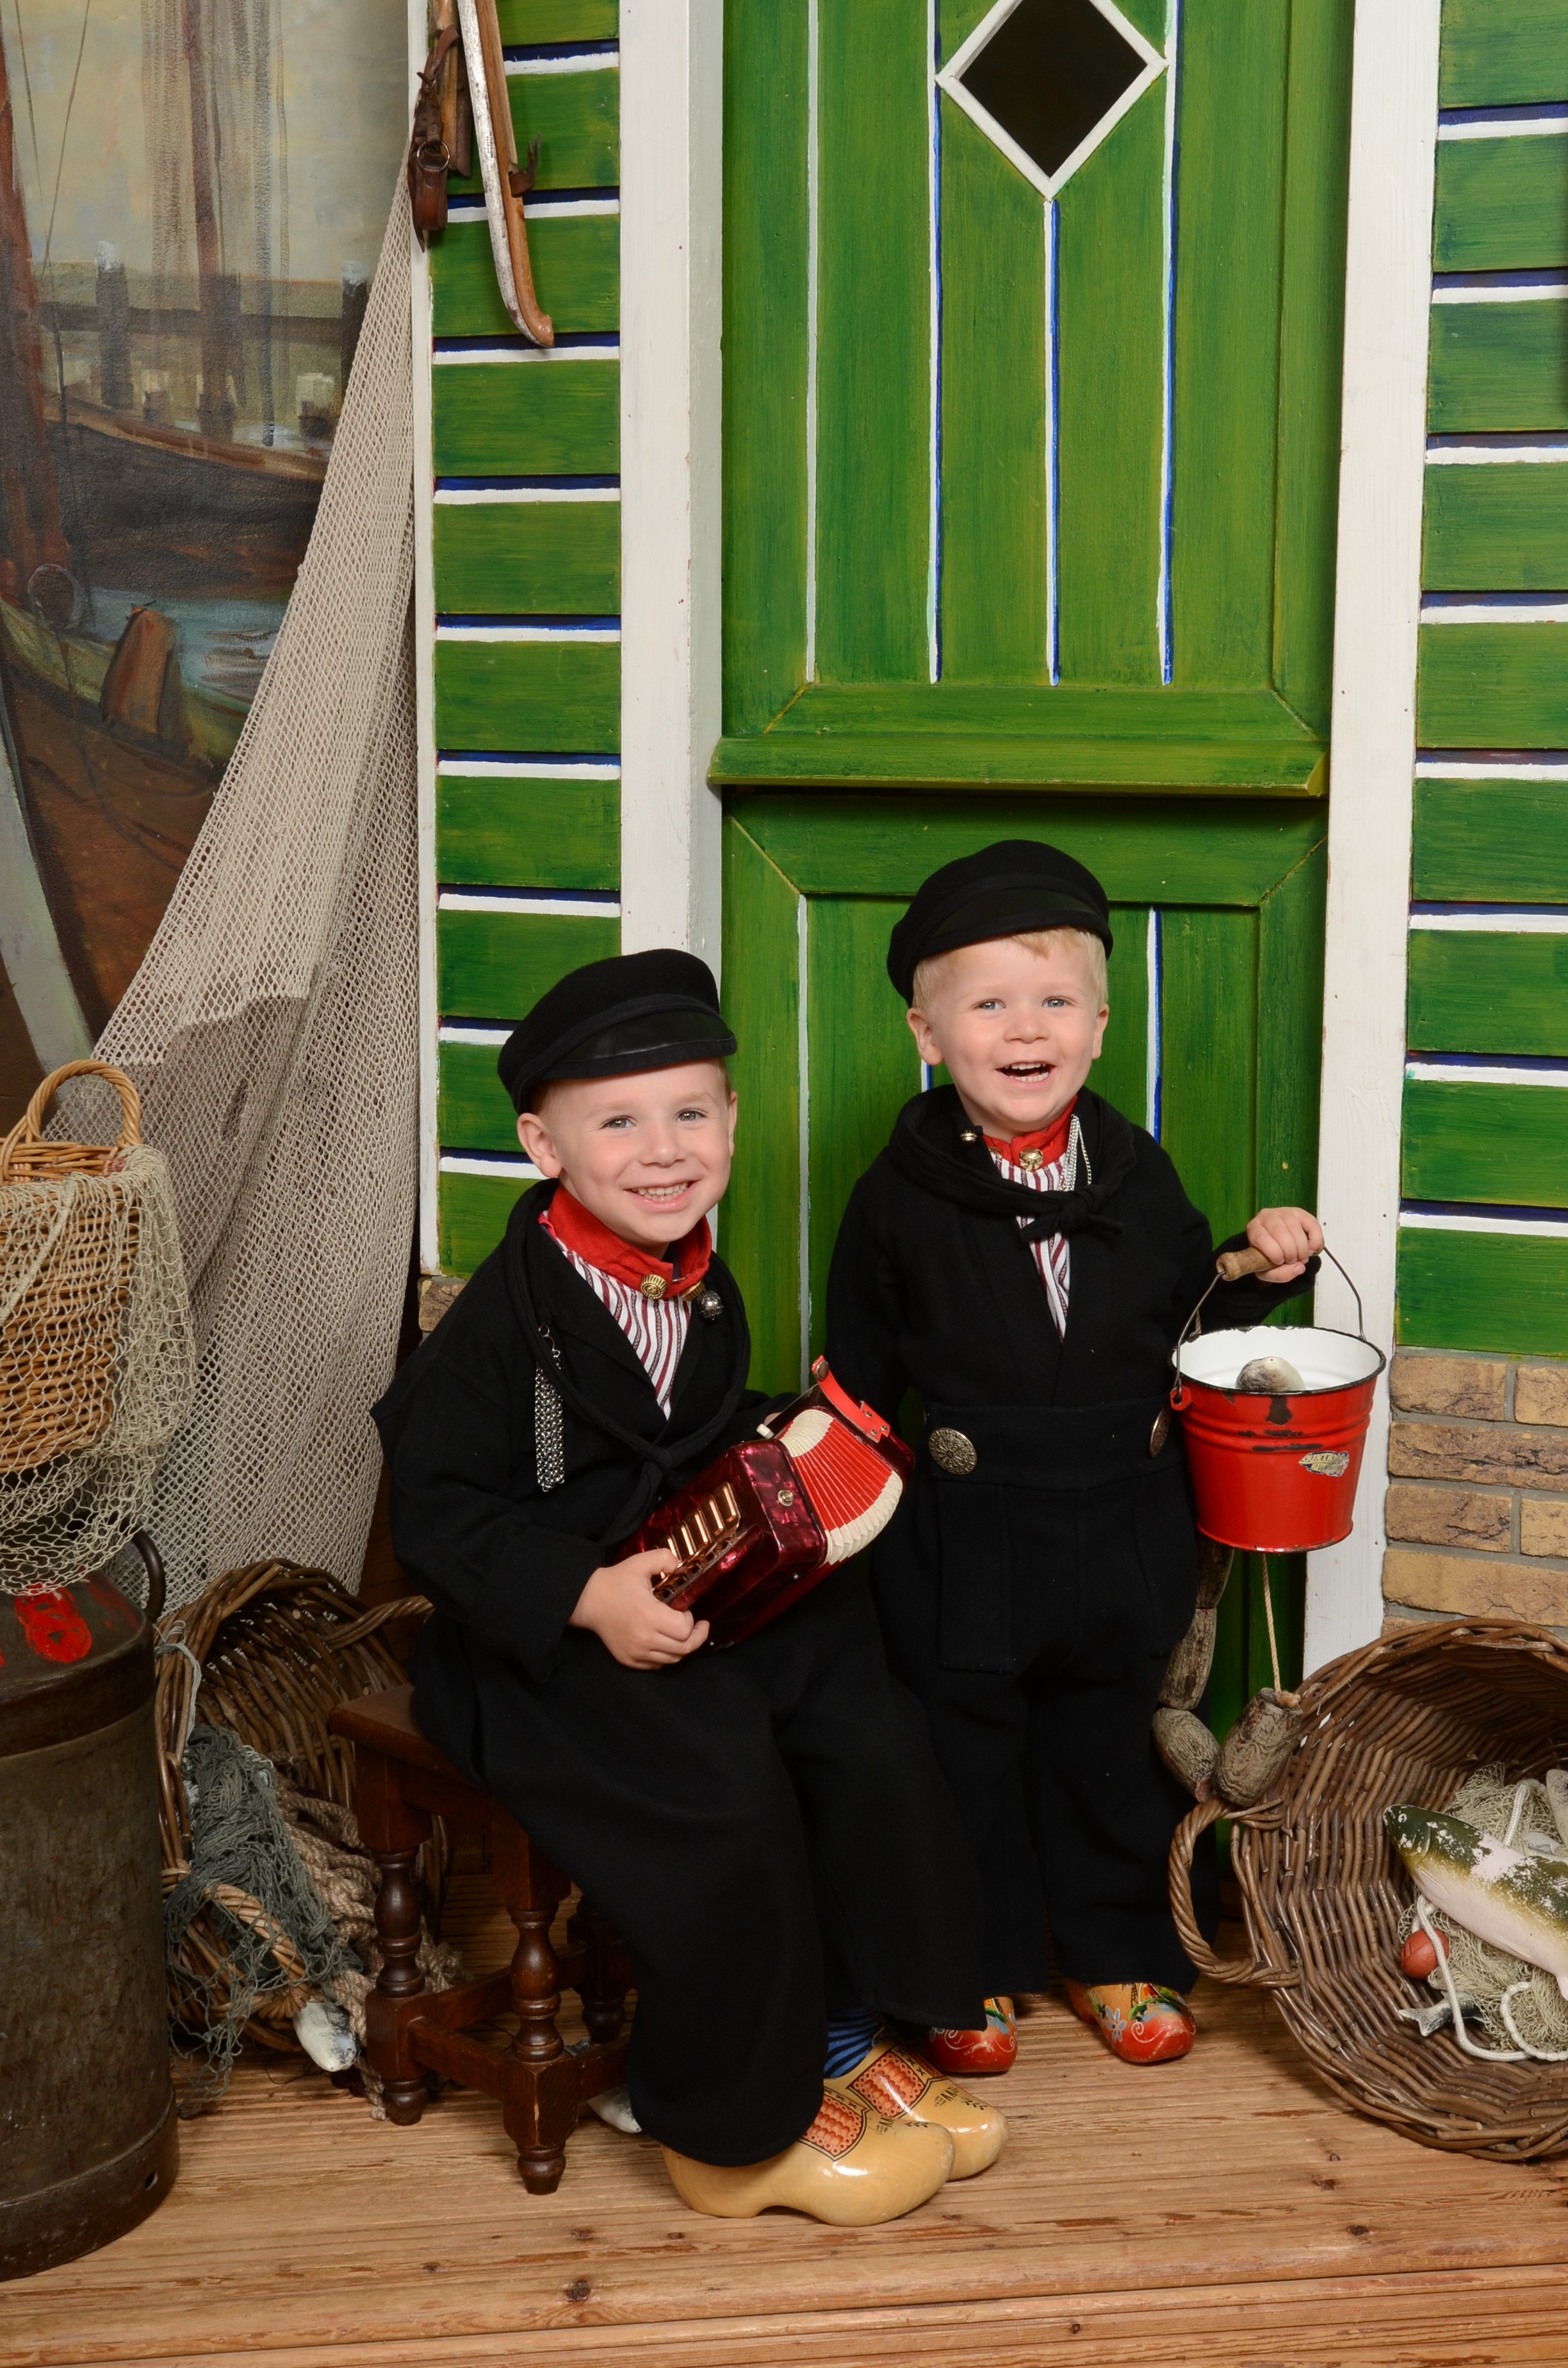 Kids in Volendam costume